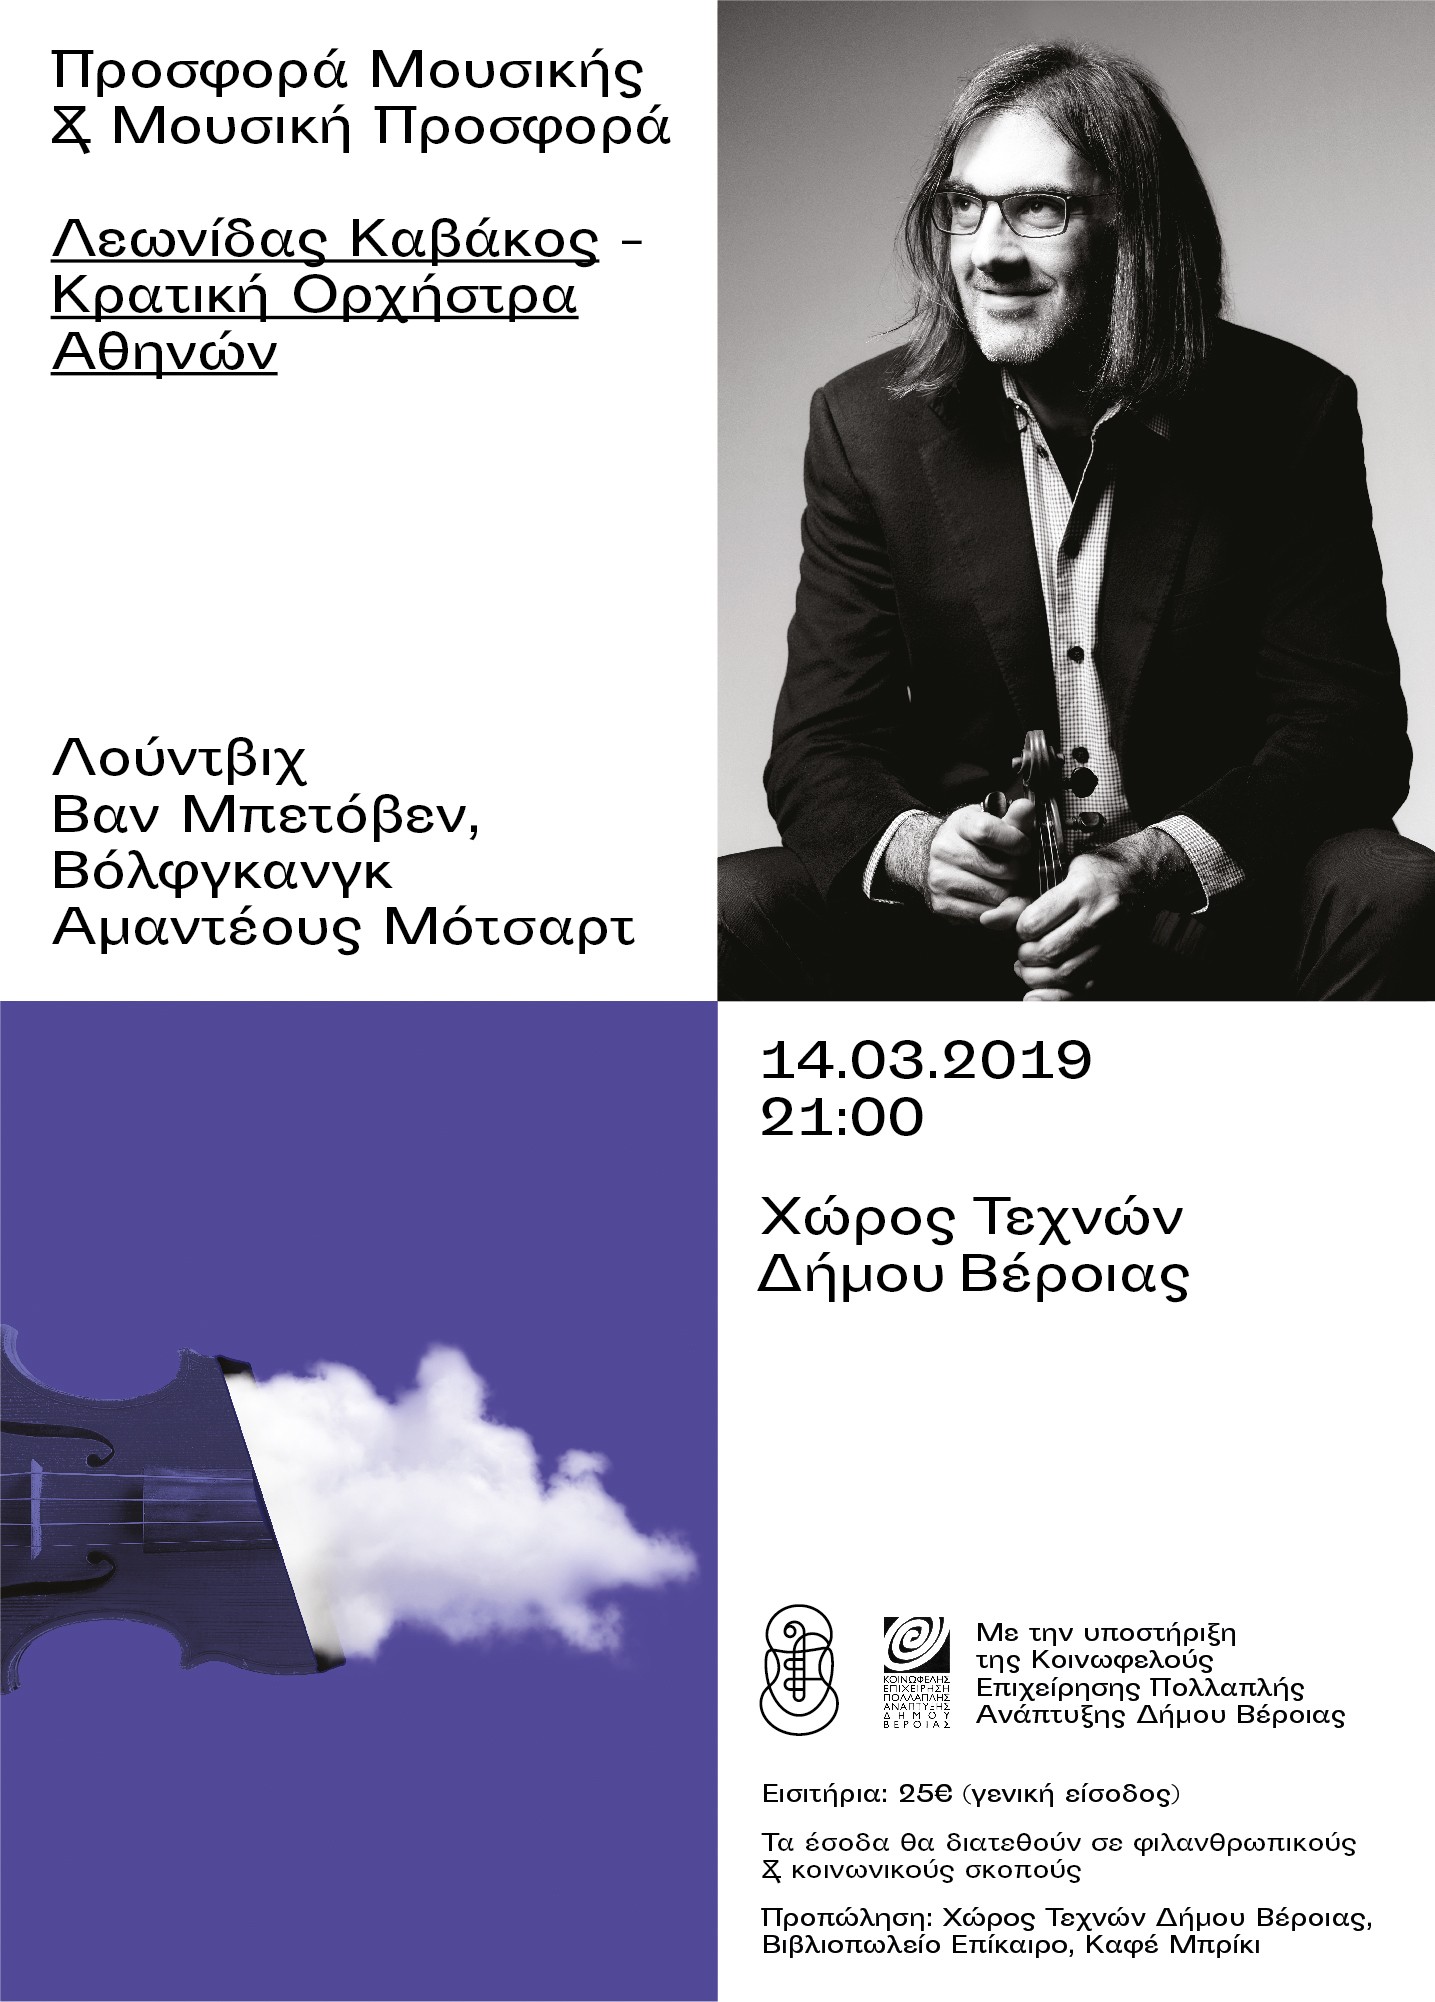 Ο Λεωνίδας Καβάκος, στη Βέροια, σε μια μοναδική συναυλία με την Κρατική Ορχήστρα Αθηνών!